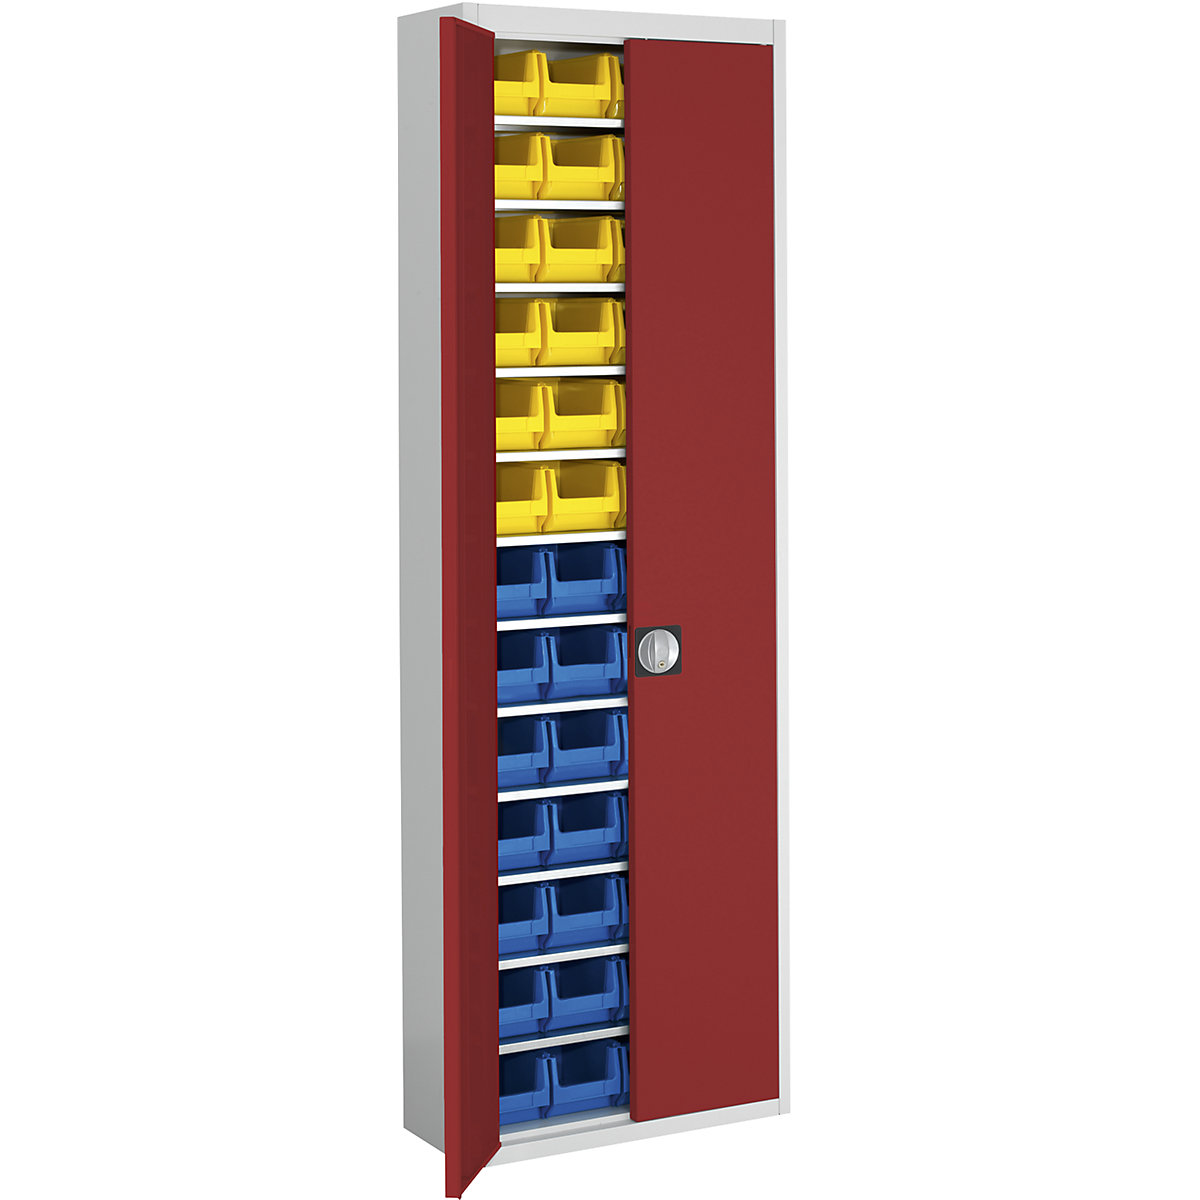 Skladová skriňa s prepravkami s viditeľným obsahom – mauser, v x š x h 2150 x 680 x 280 mm, dvojfarebná, korpus šedý, dvere červené, 52 prepraviek-8